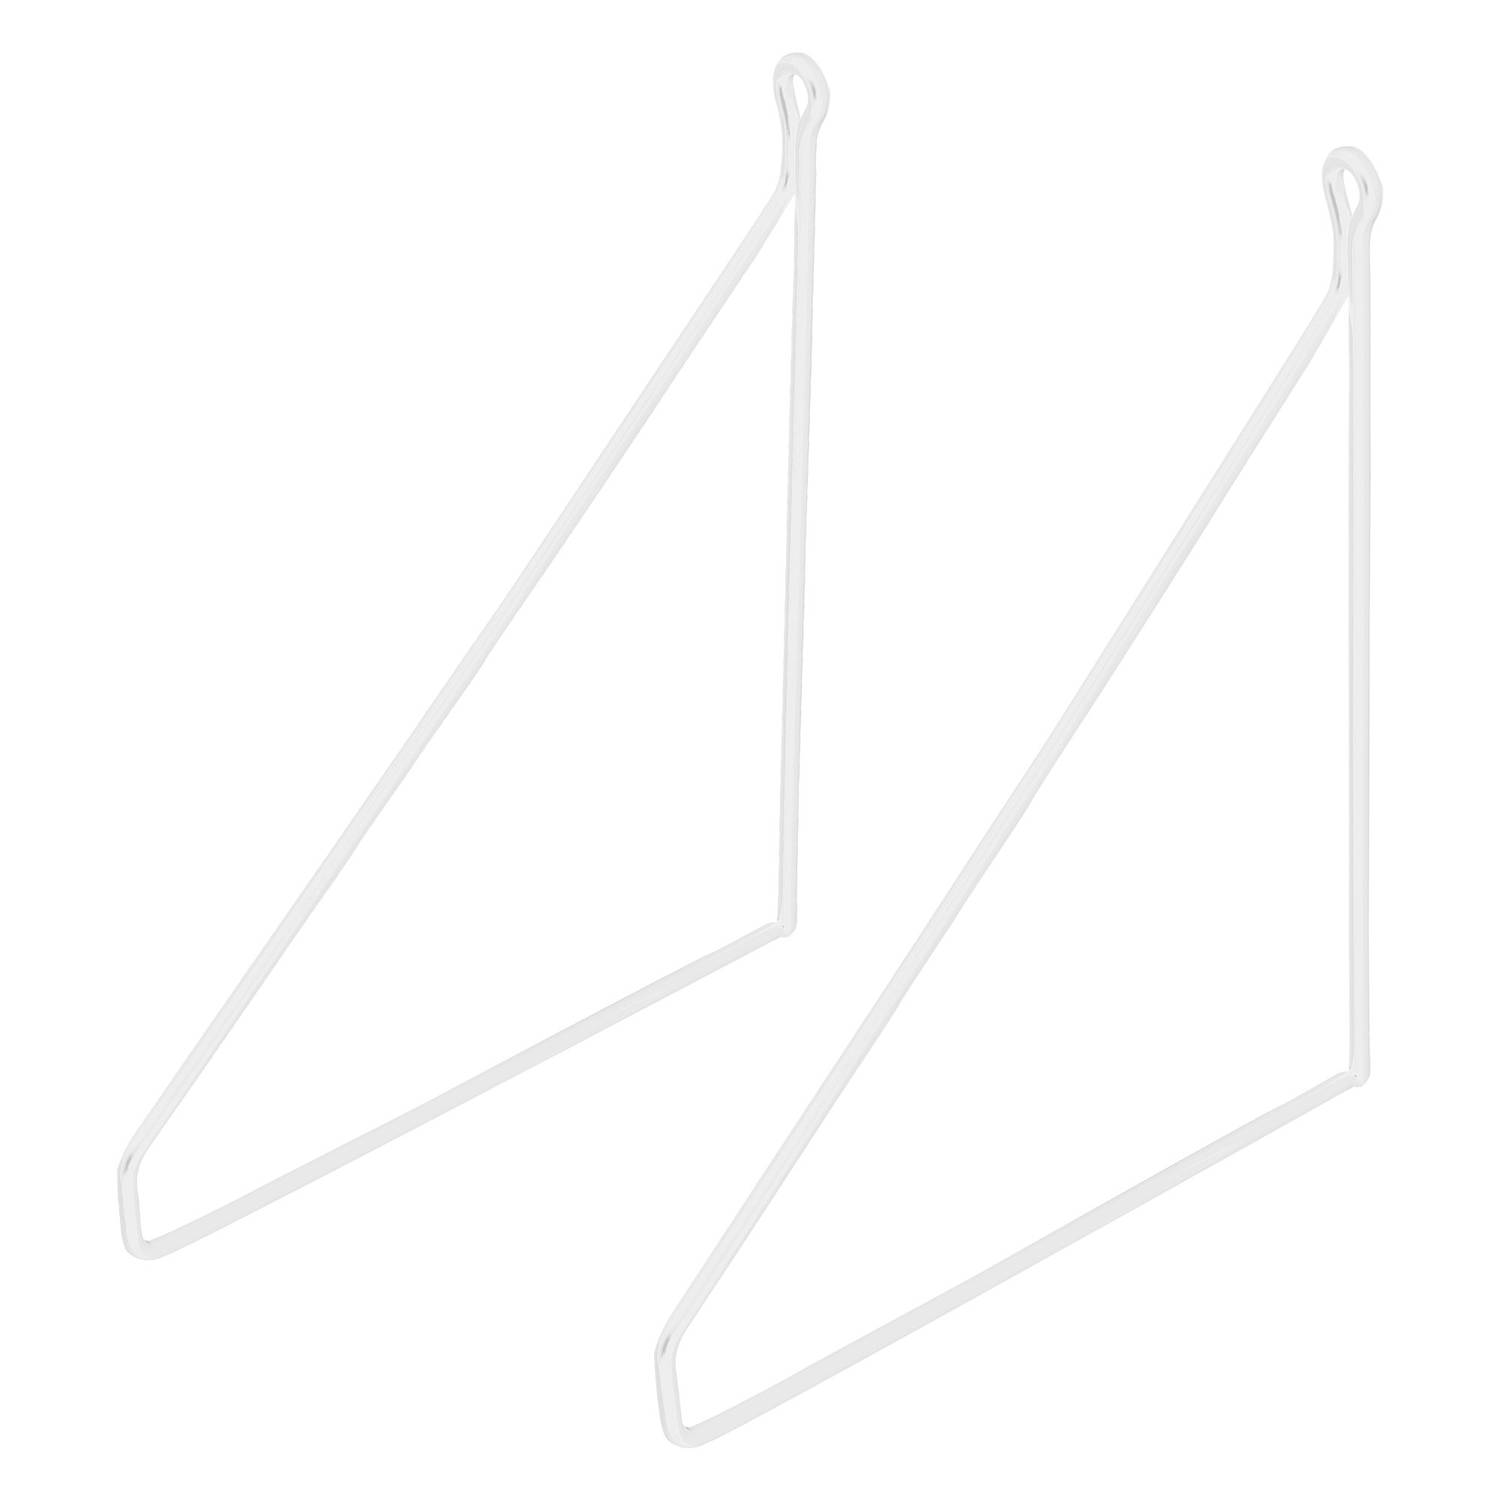 Planksteun driehoek 2 stuks 25x25 cm wit metaal ML design